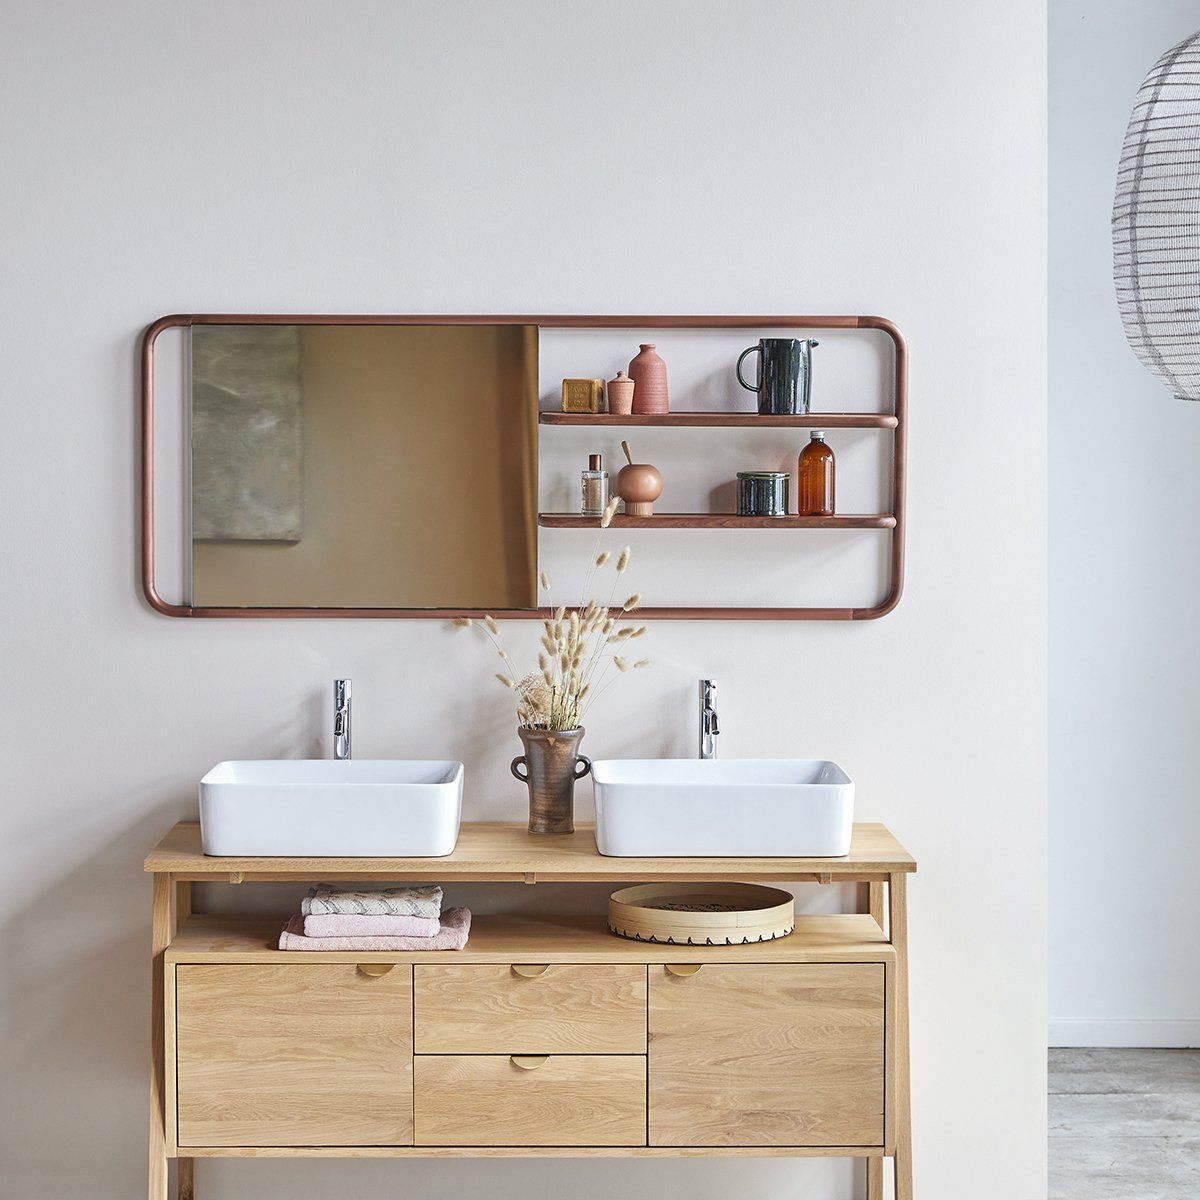 Idées déco : 7 manières inspirantes de décorer sa salle de bain